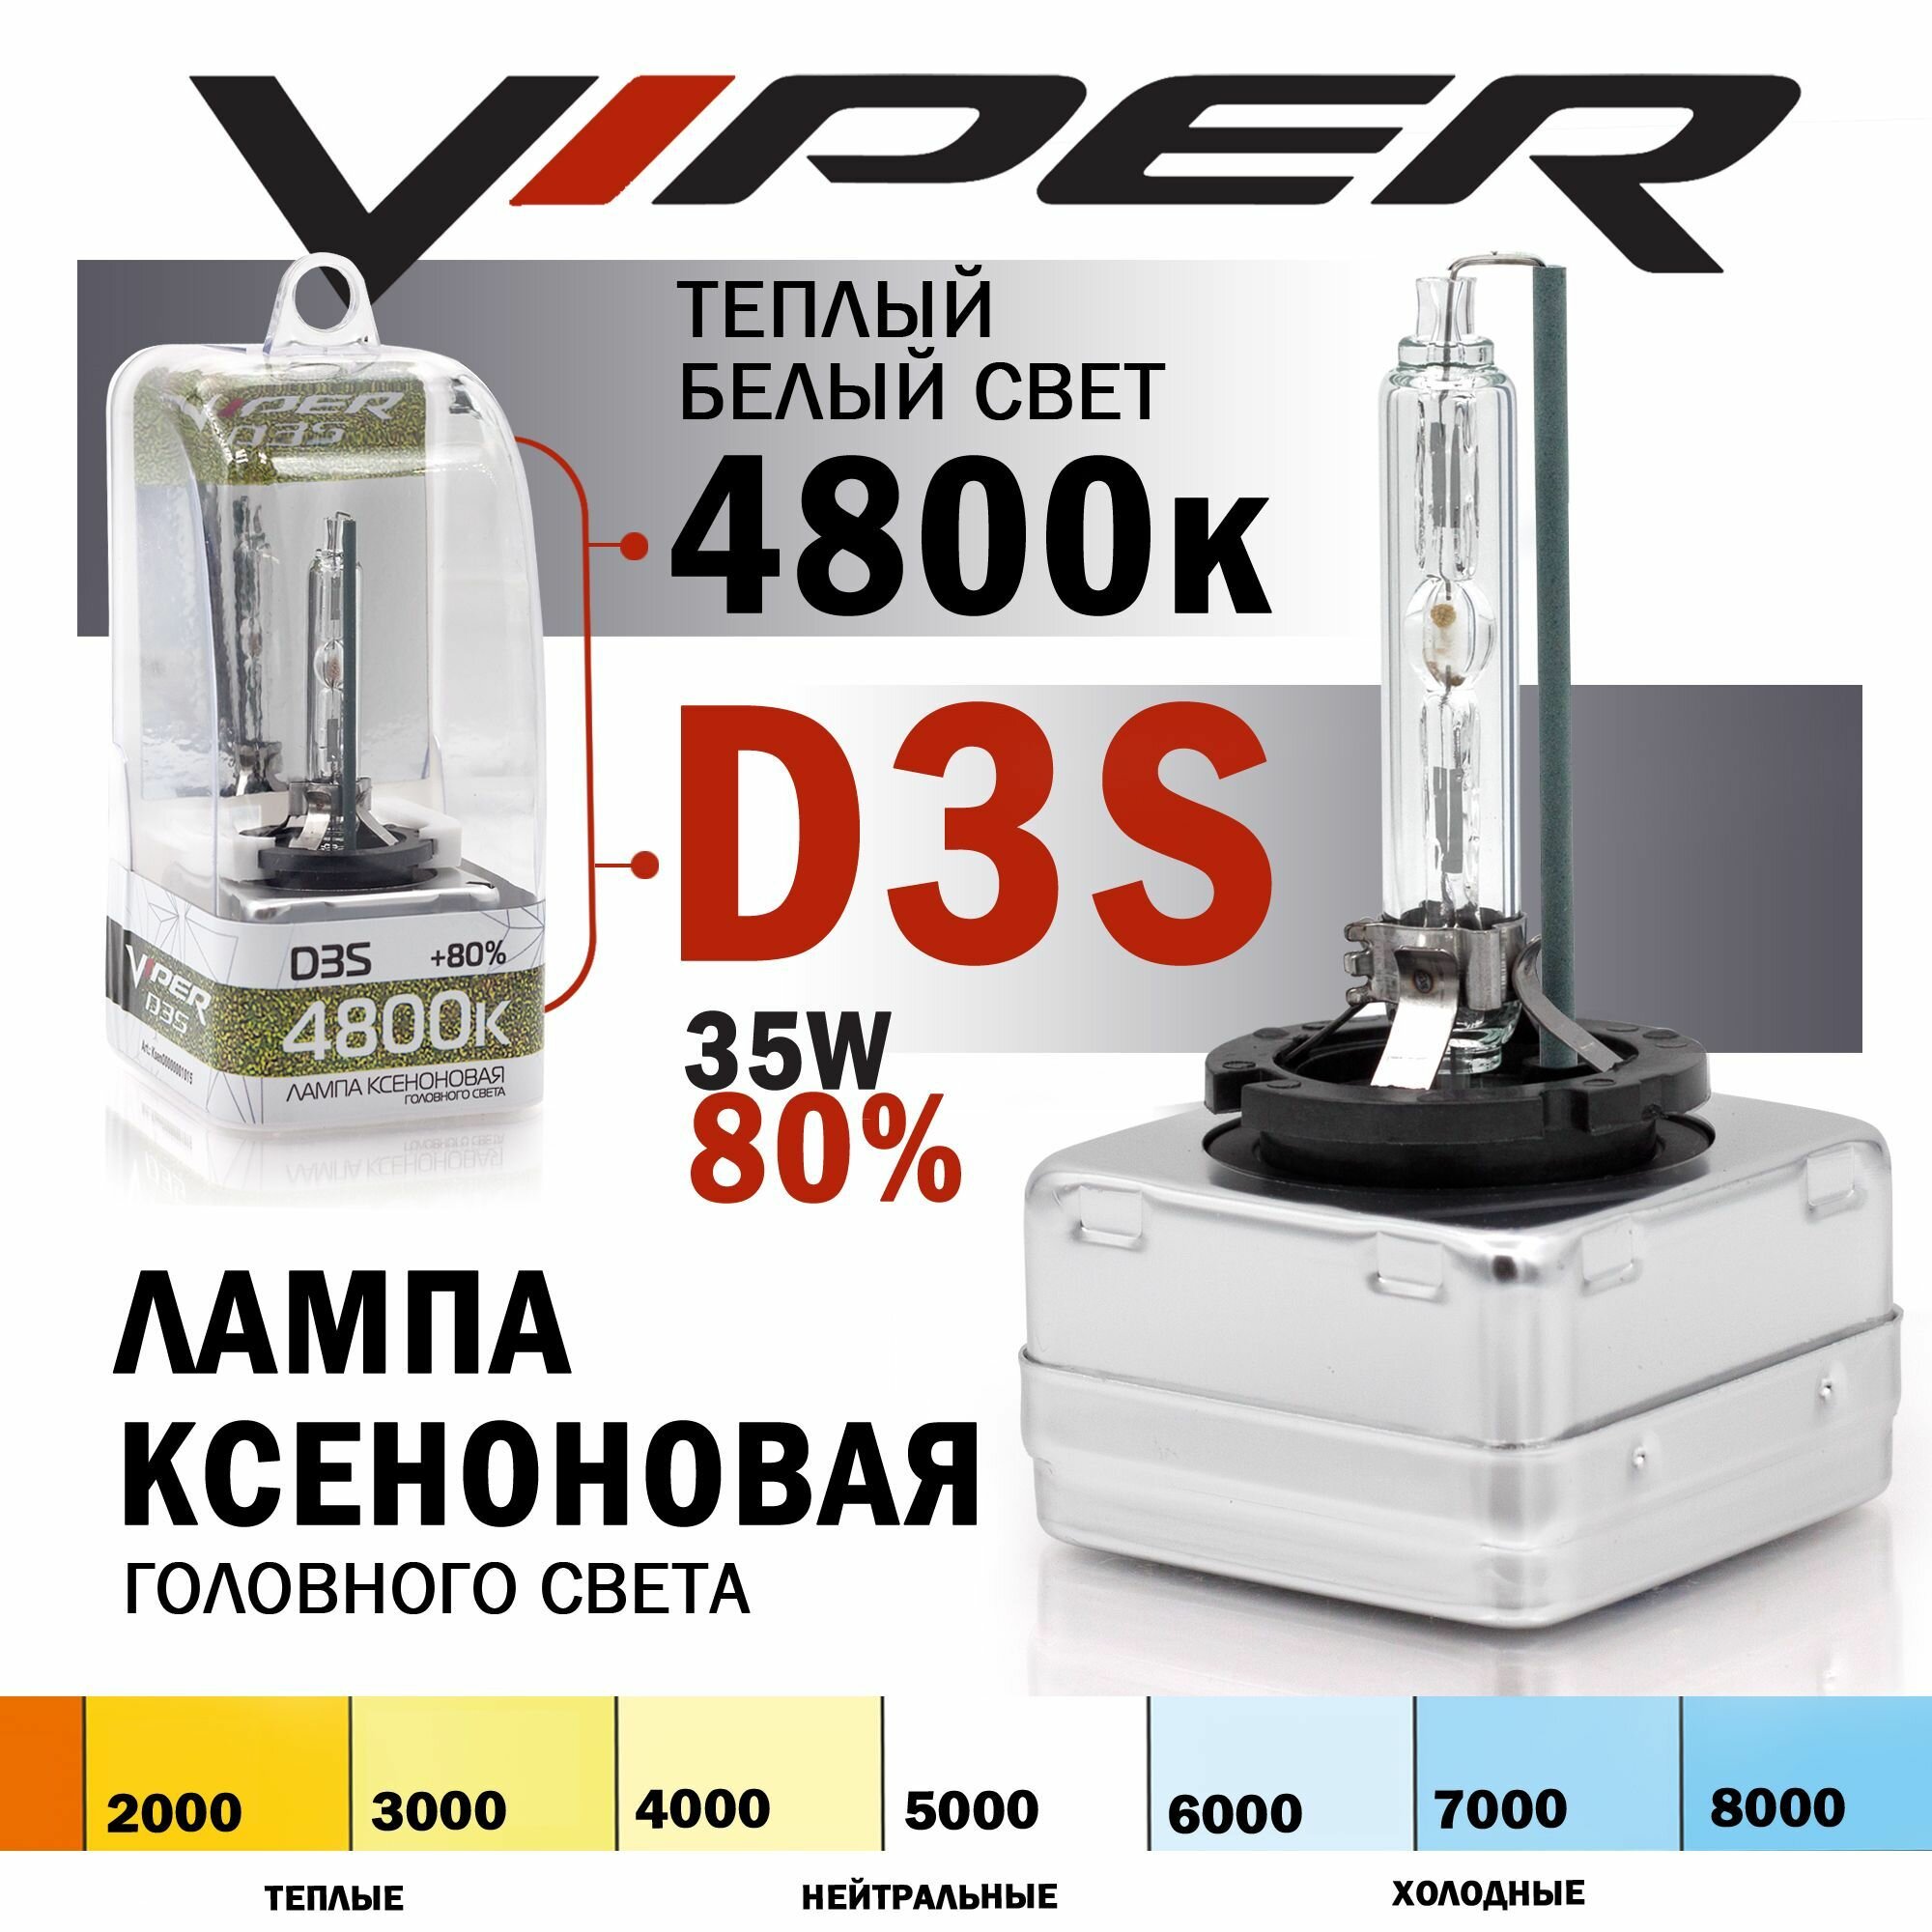 Ксеноновая лампа VIPER D3S 4800K (+80%) Корея для автомобиля штатный ксенон, питание 12V, мощность 35W, 1 штука